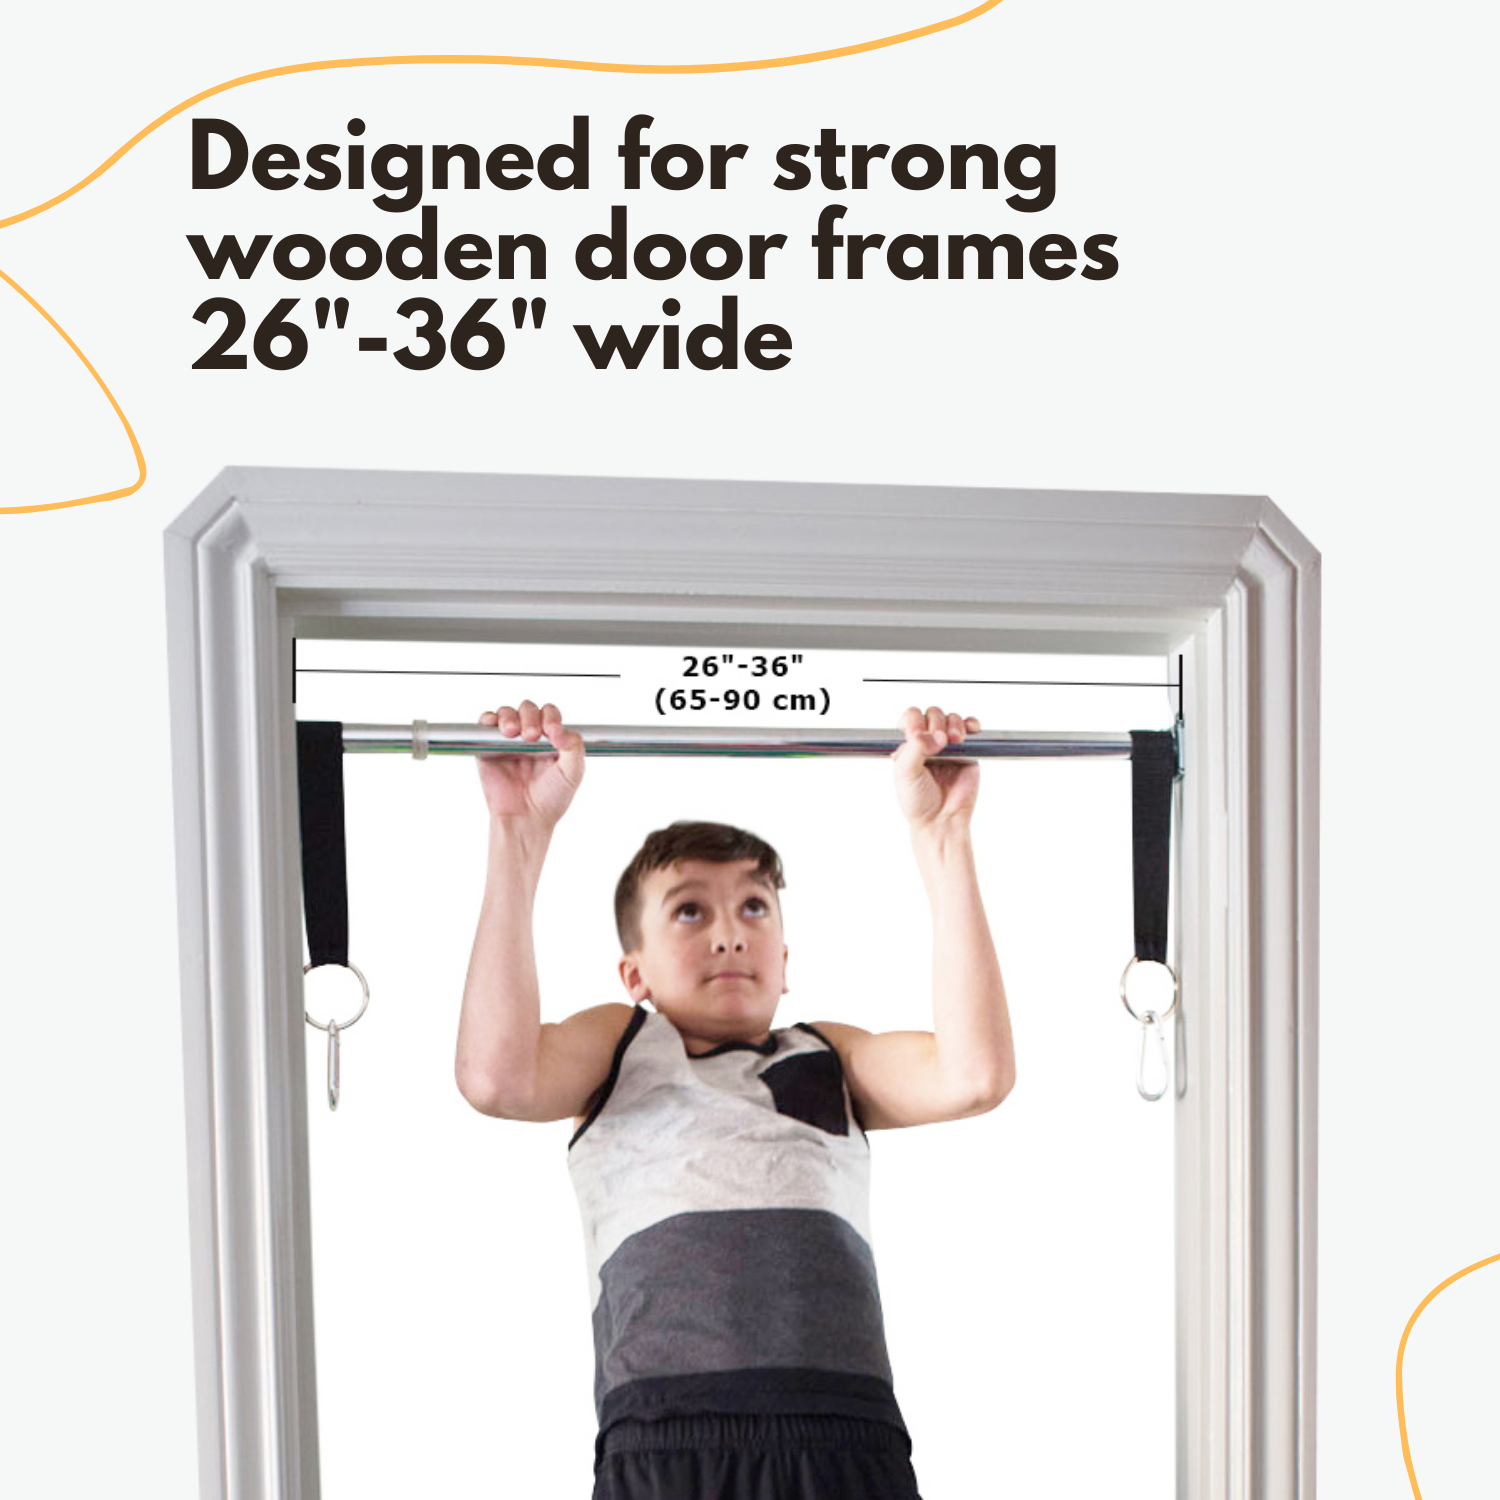 The doorway swing support bar is designed for strong wooden door frames 26"-36" wide